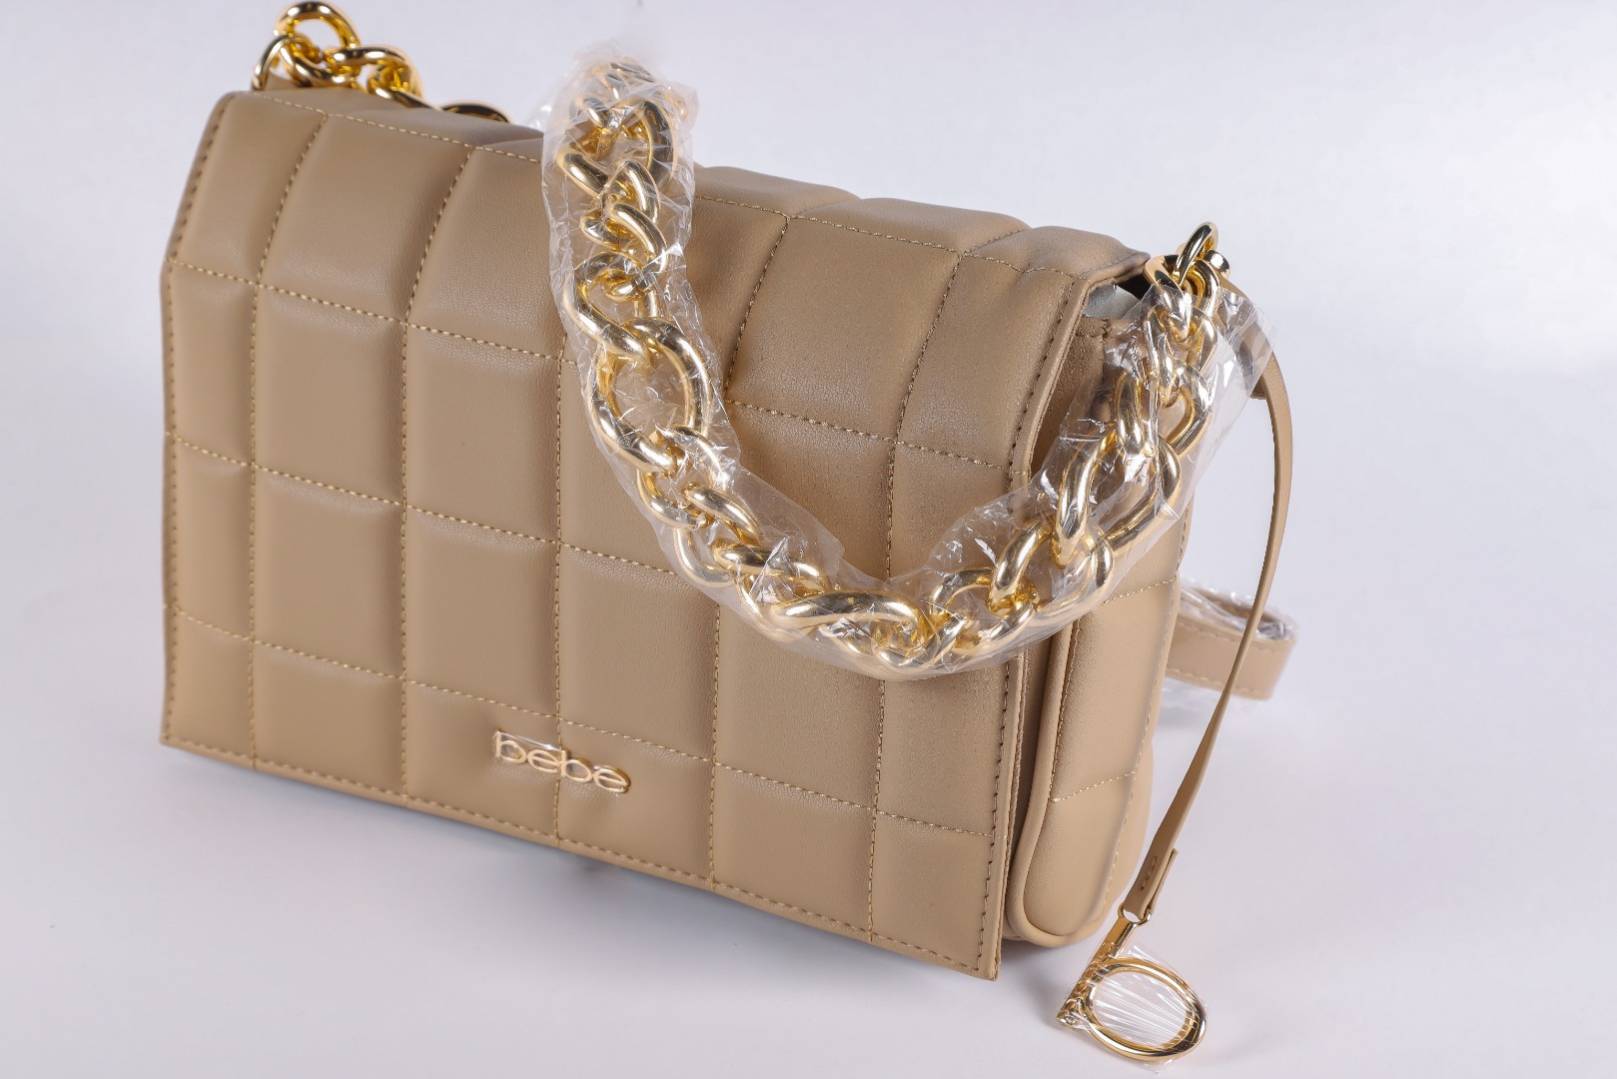 Tía egipcio Júnior Via Trading | Assorted Bebe New Overstock Handbags Loads